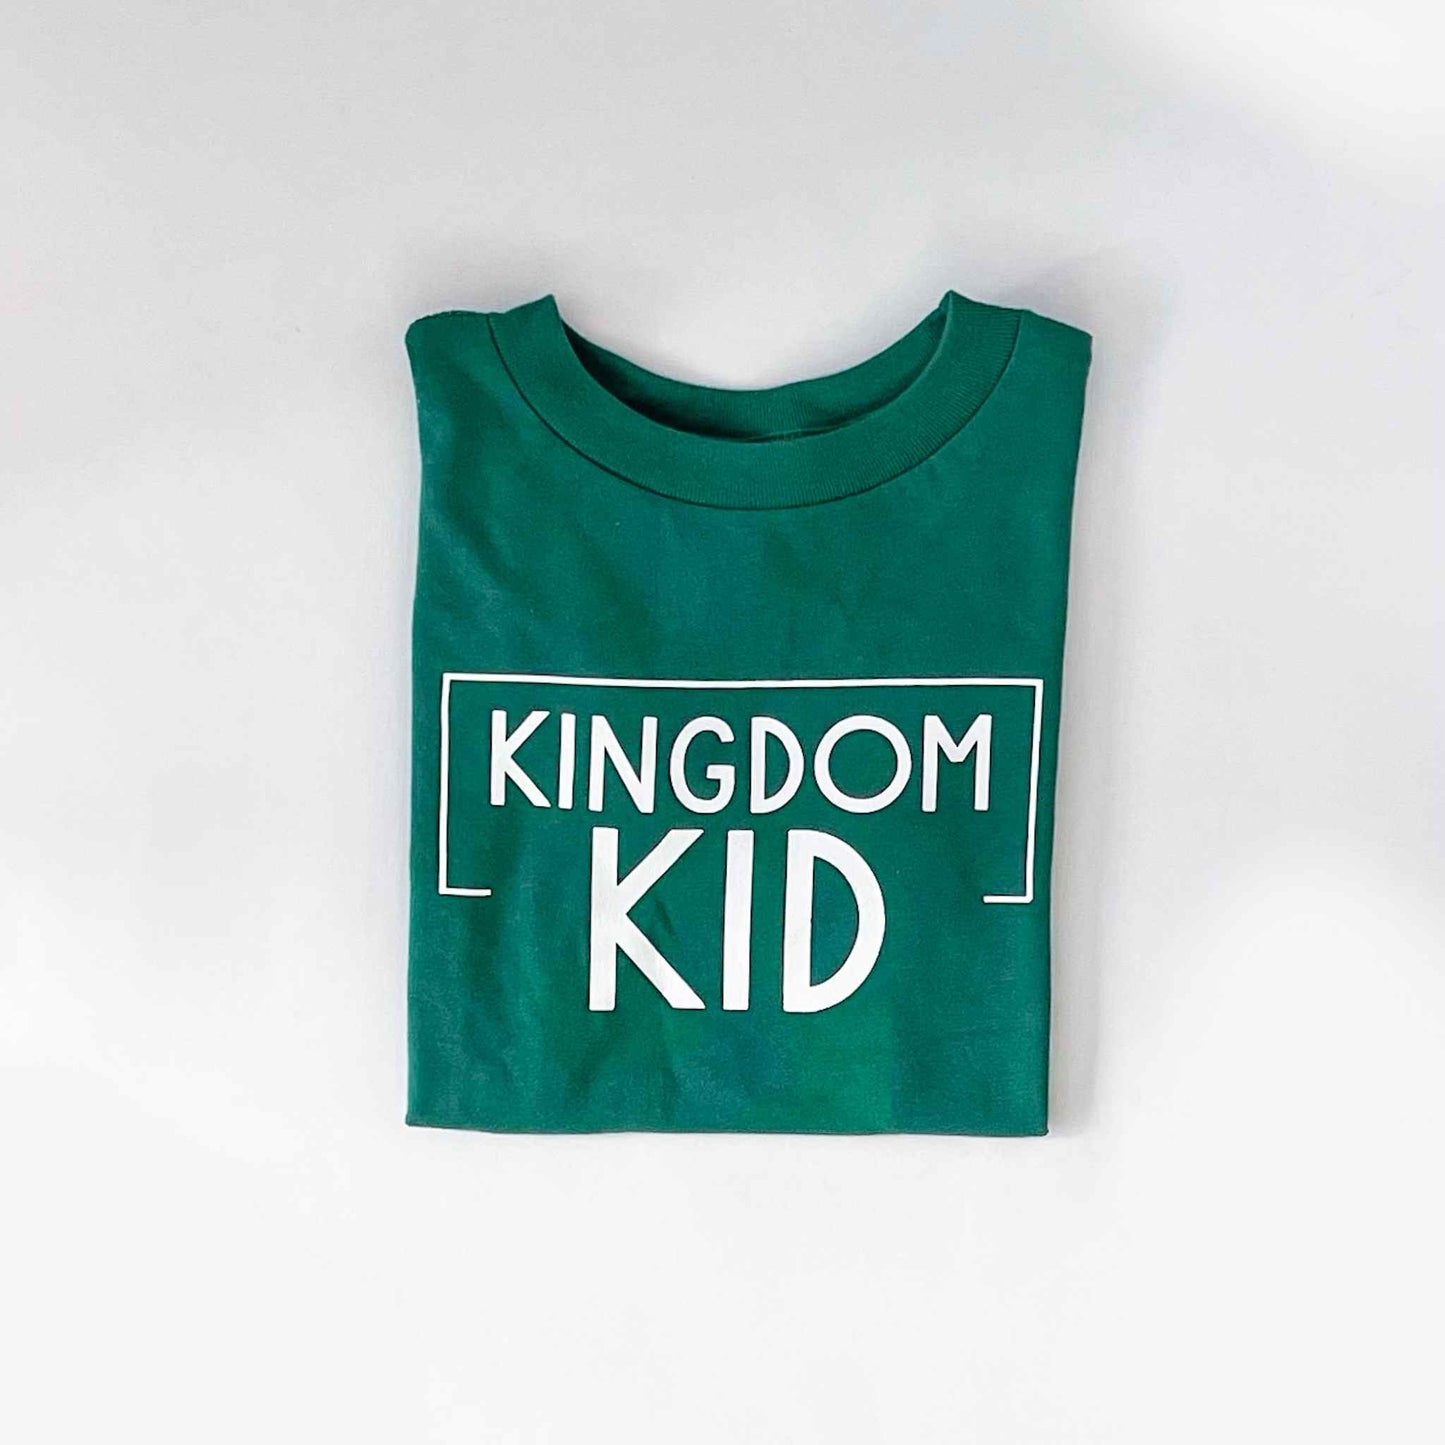 Kingdom Kid Kids T-Shirt